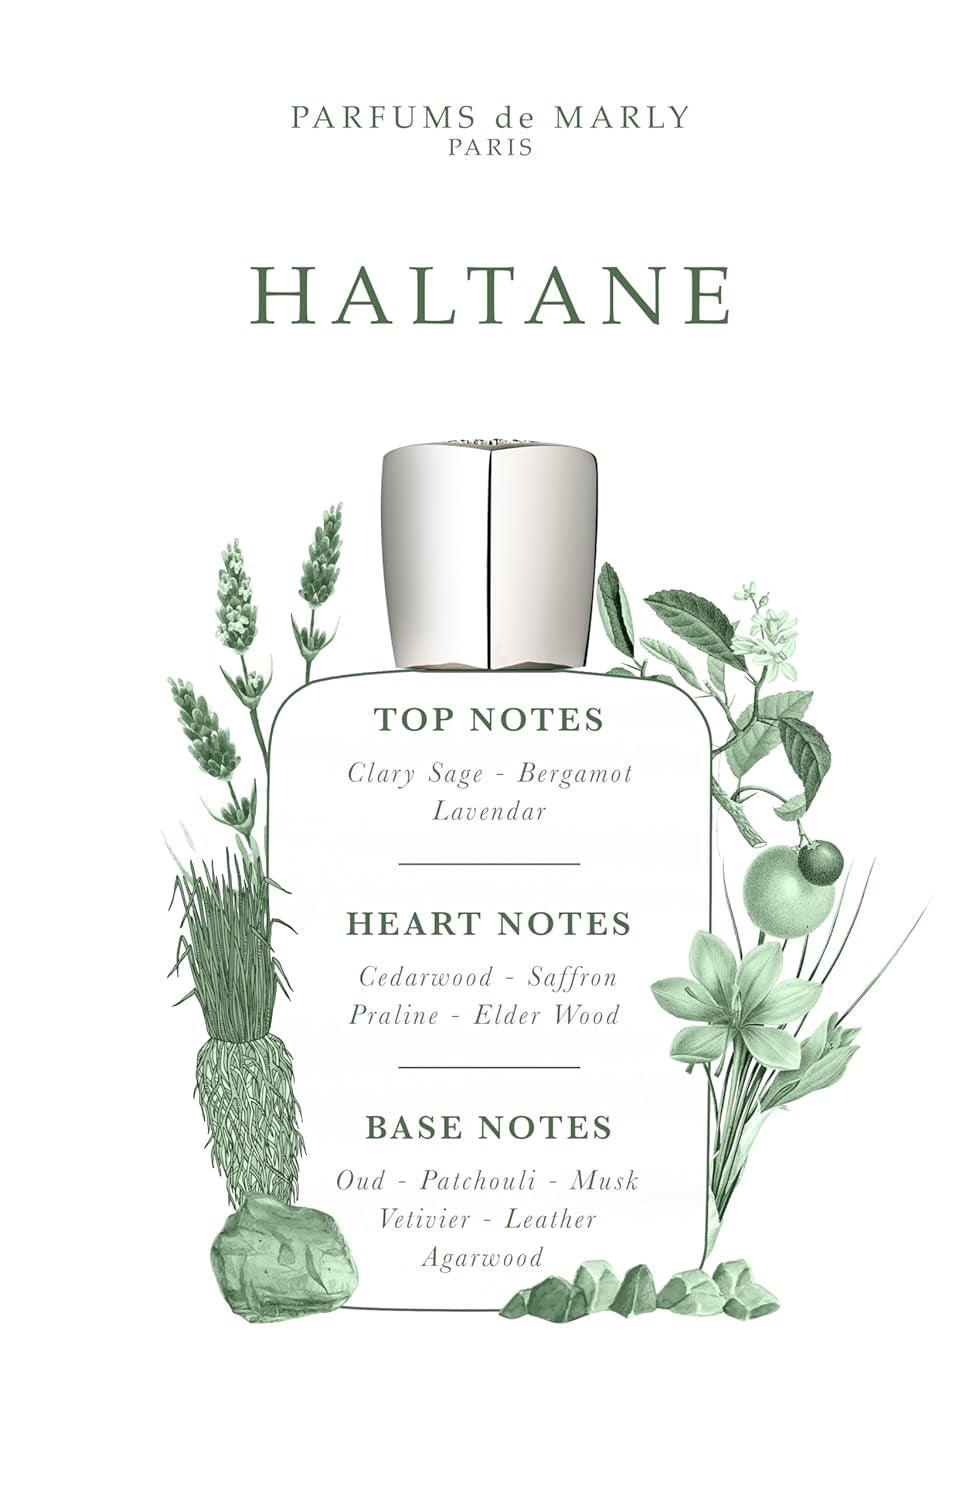 PARFUMS DE MARLY - Haltane - 2.5 Fl Oz - Eau De Parfum for Men - Top Notes Bergamot, Lavender, Sage - Heart Notes Saffron, Praline, Oudwood - Base Notes Patchouli, Musk, Natural Agarwood - 75ml